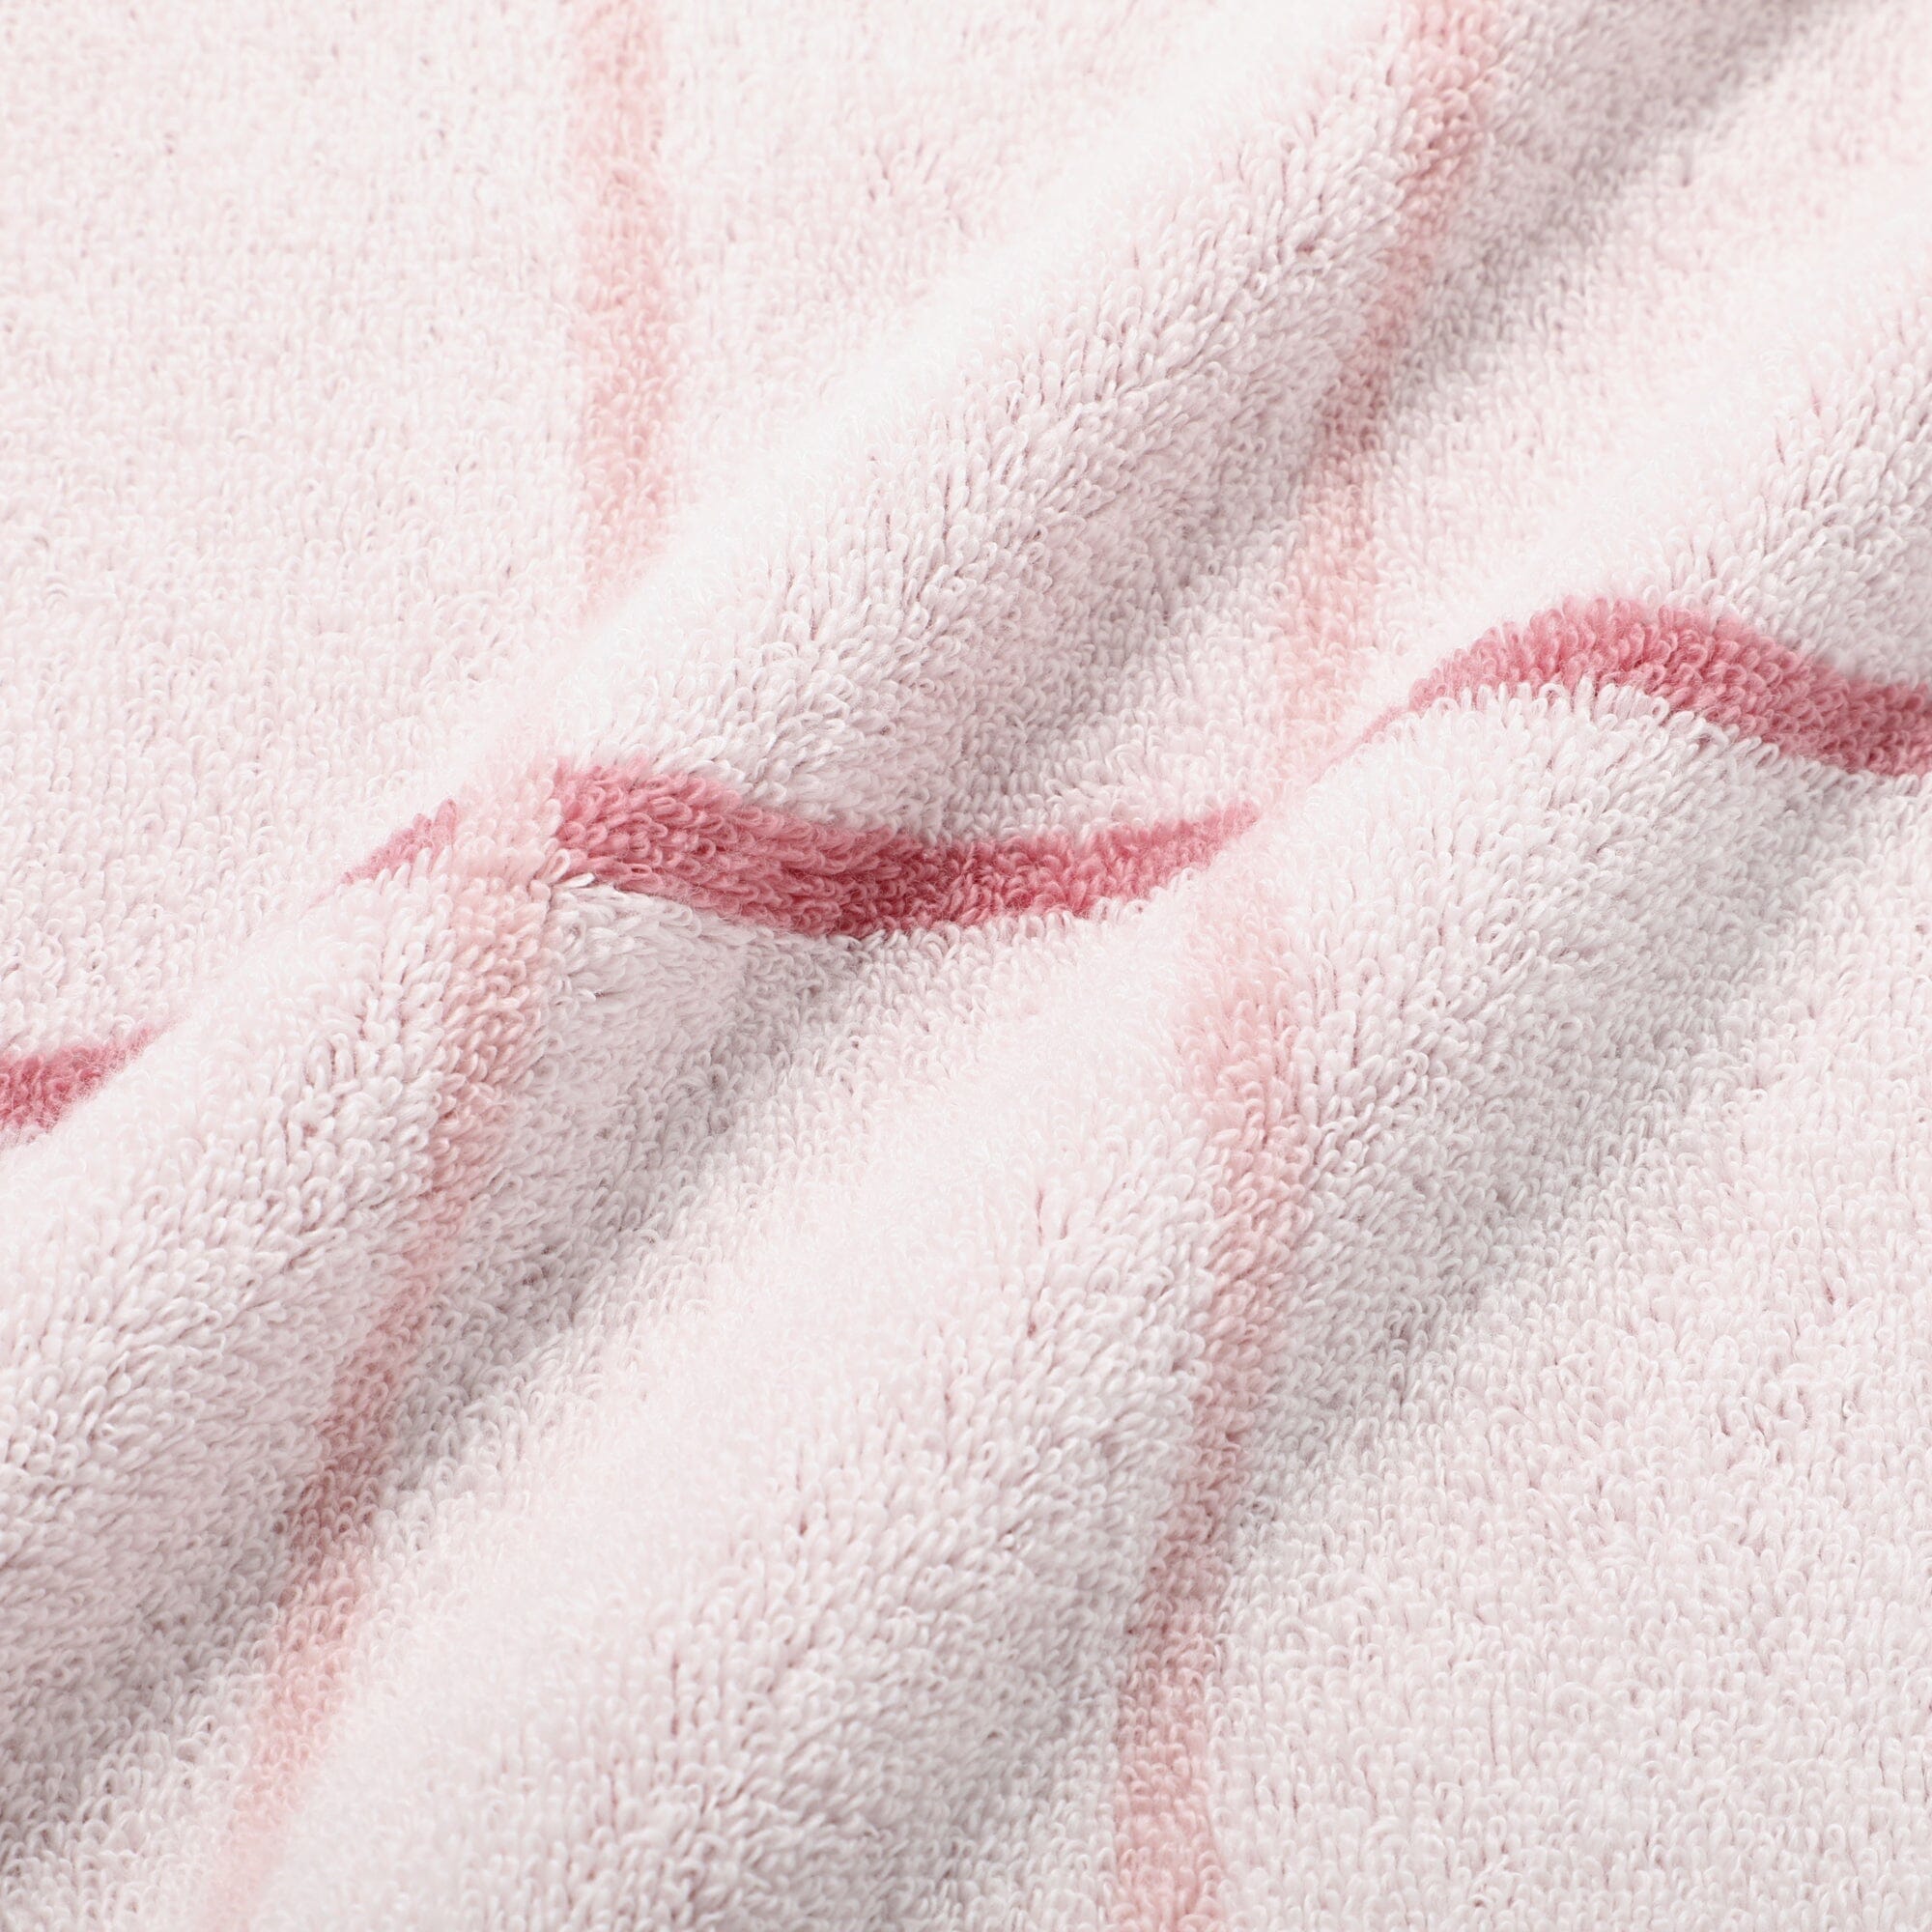 Mini Bath Towel Plaid  Pink